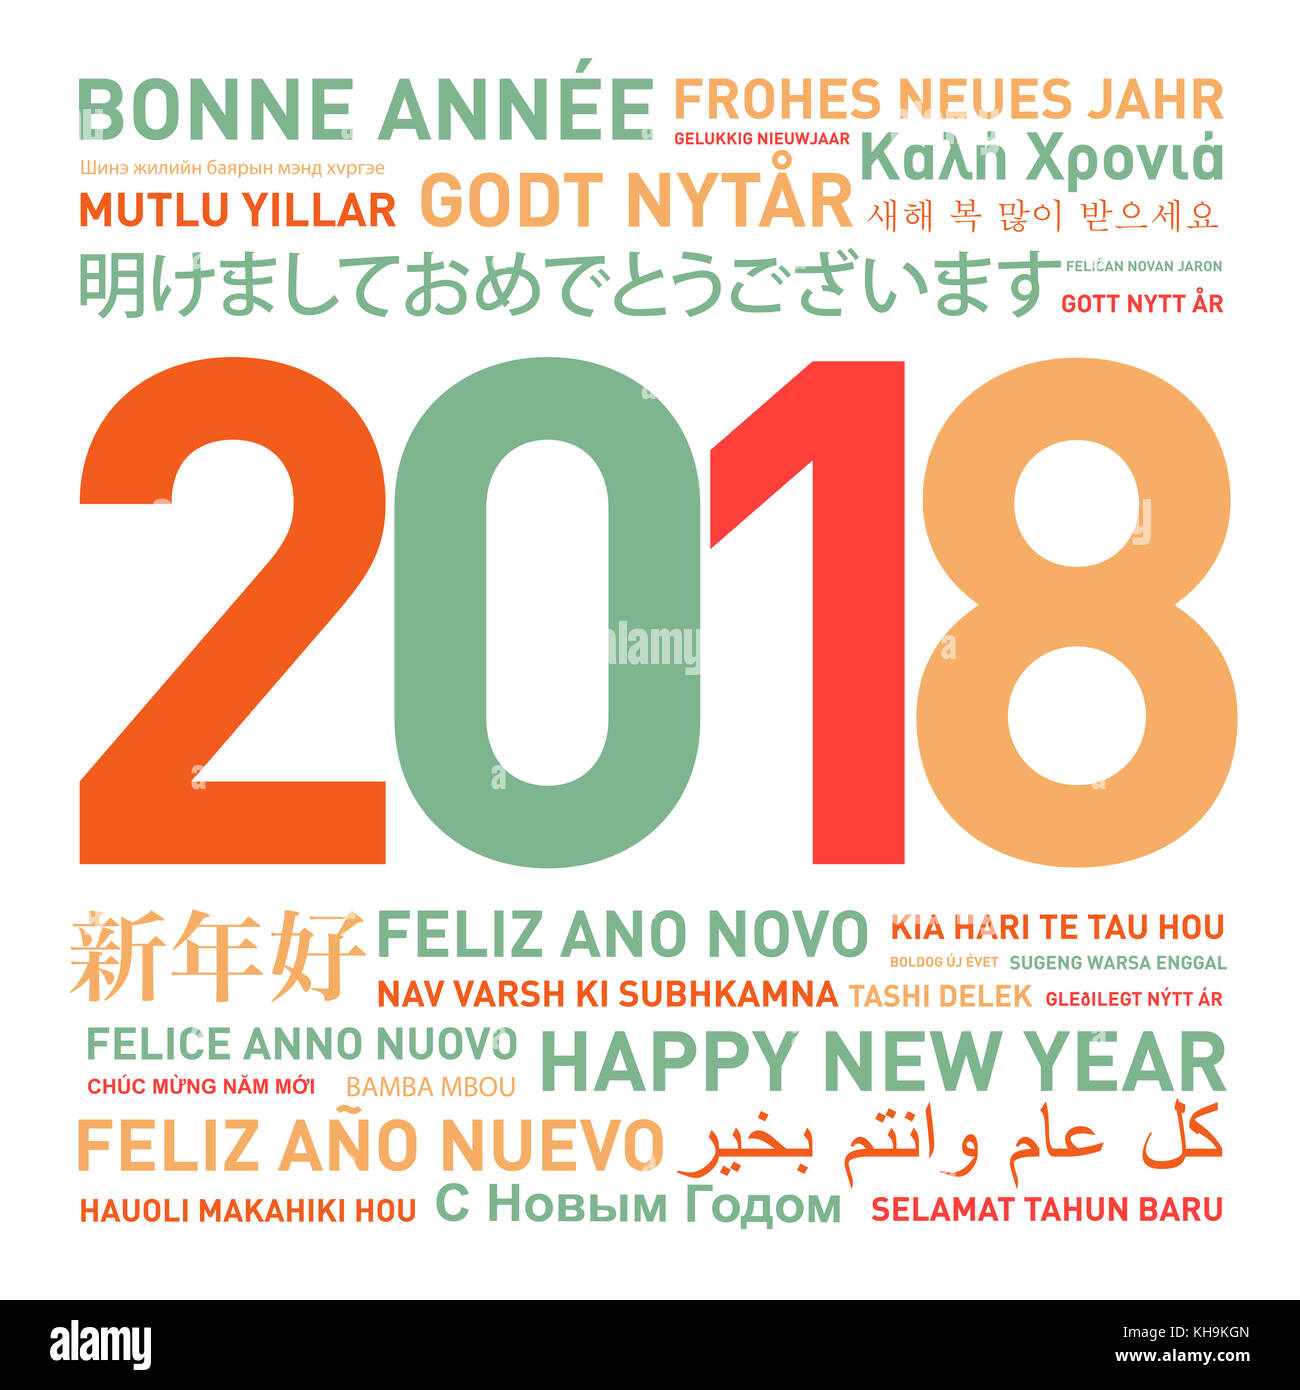 Bonne année carte du monde dans différentes langues Banque D'Images